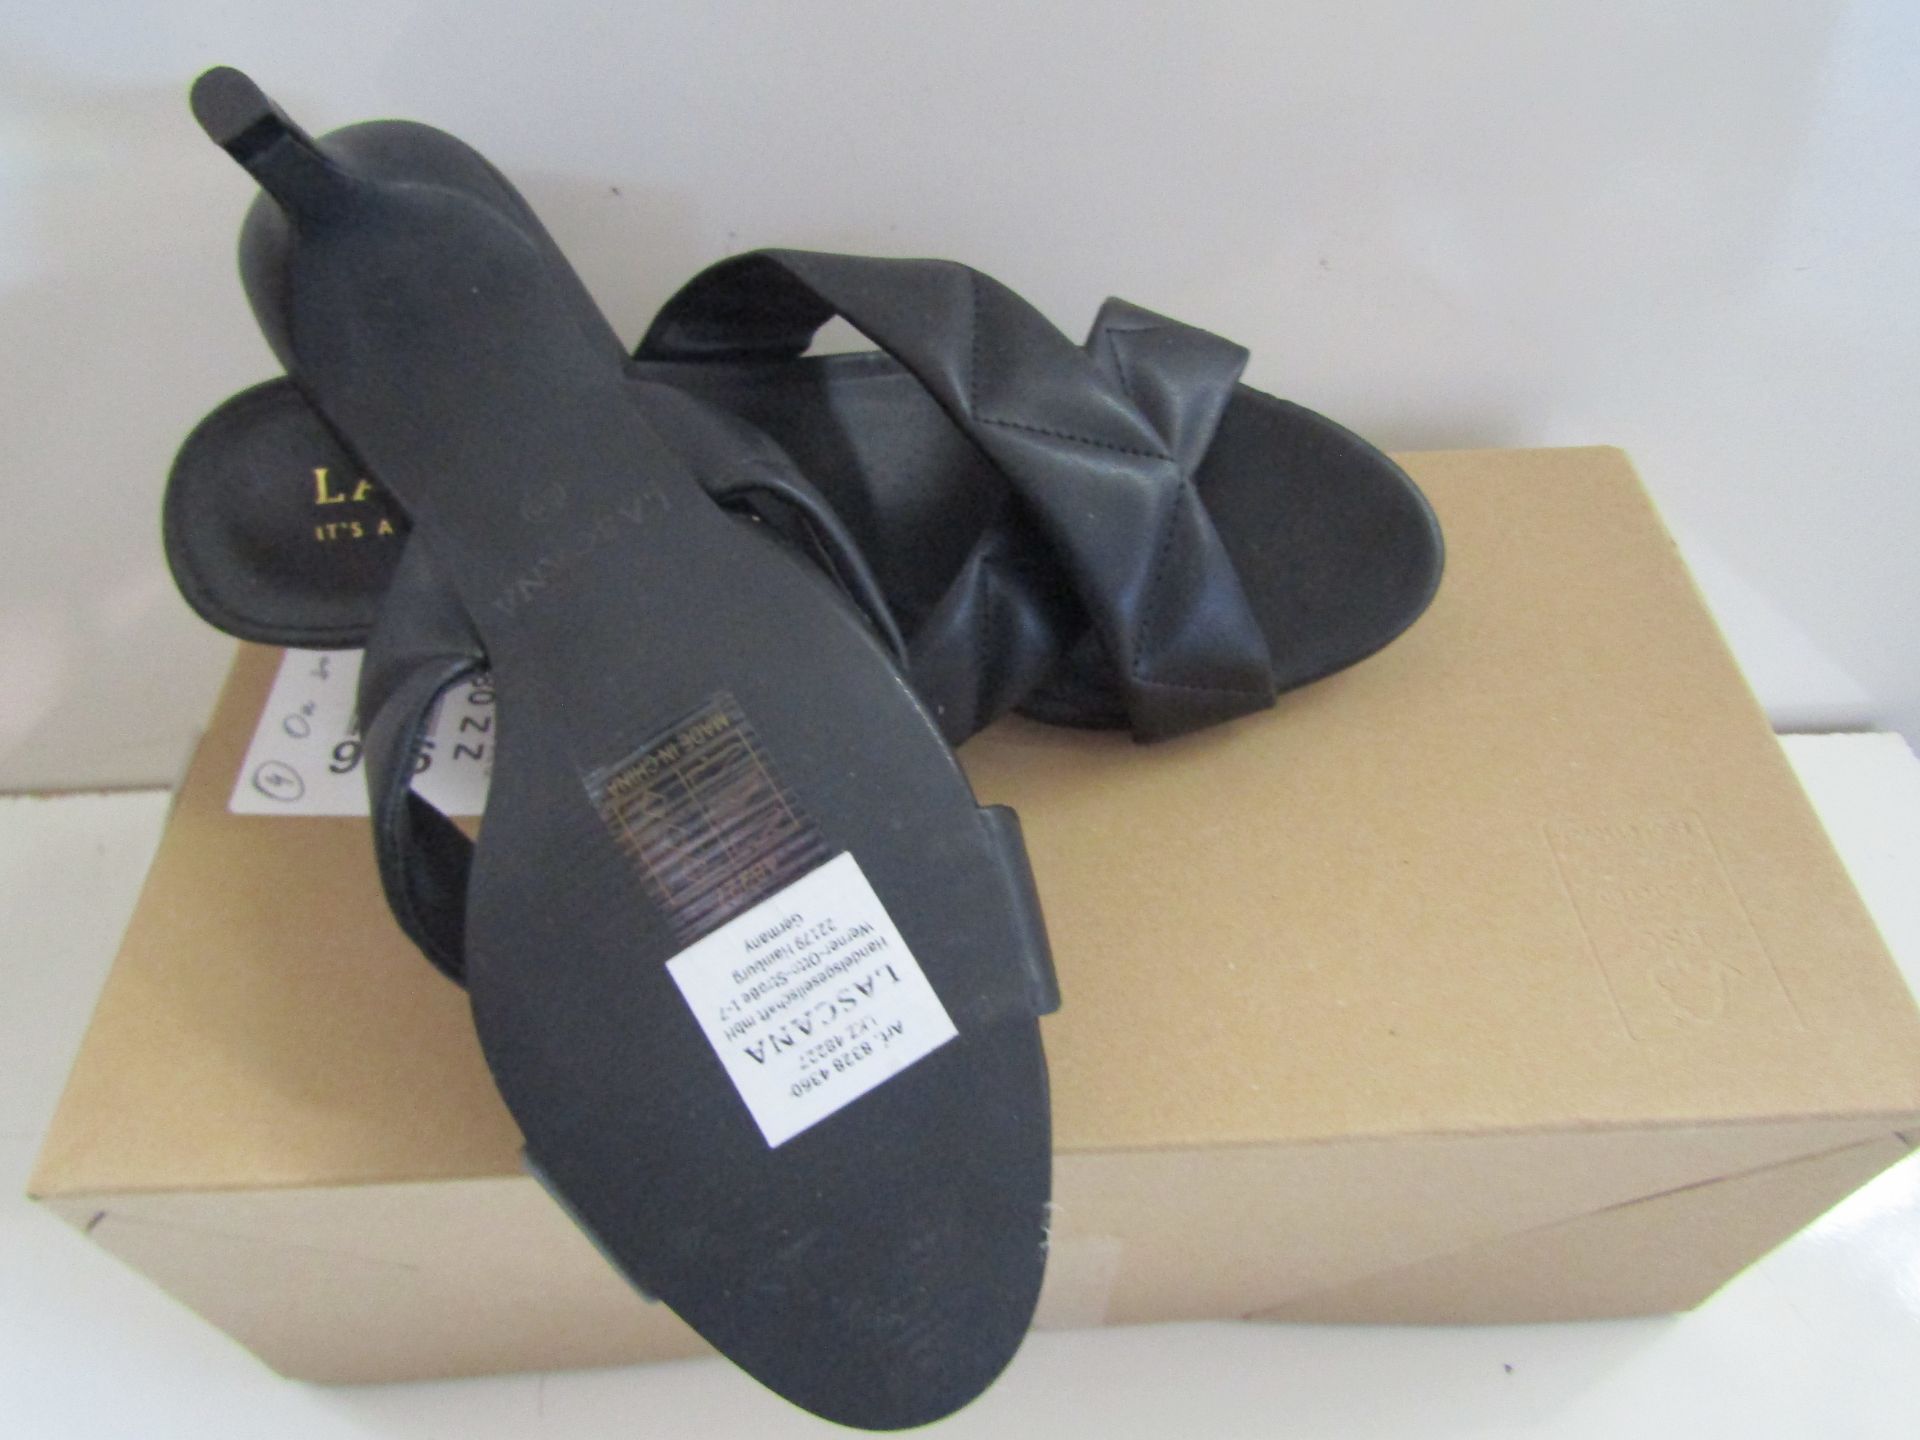 Lascana Shoe Black Size 5 New & Boxed - Image 2 of 3